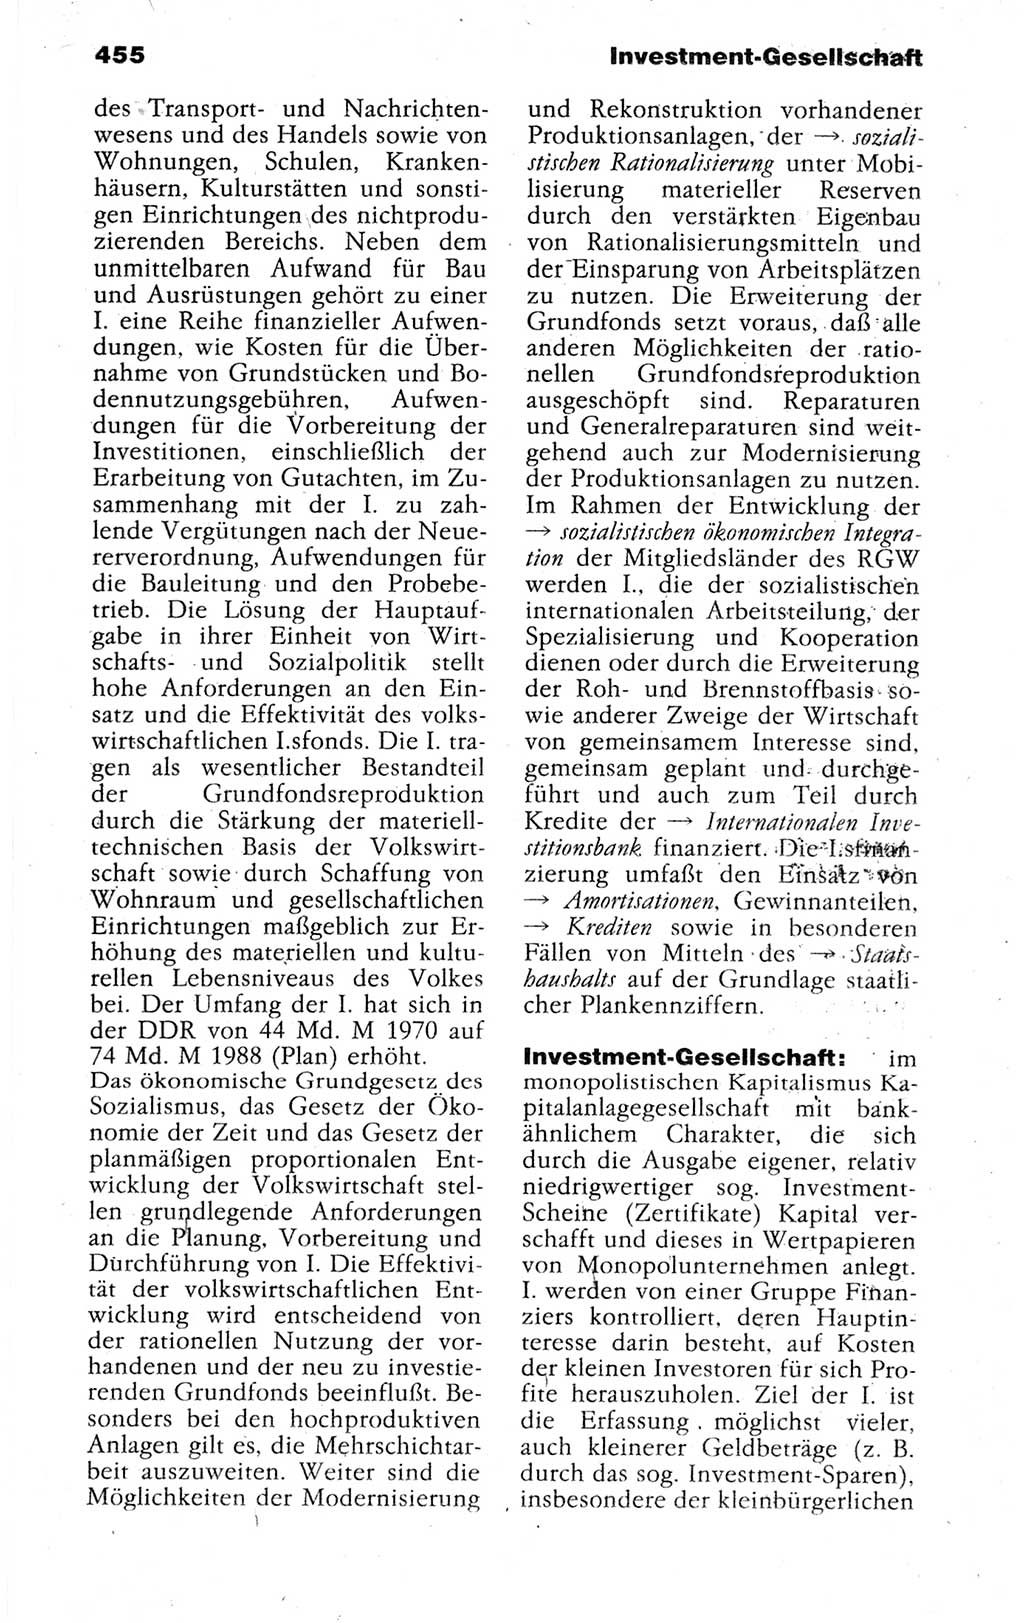 Kleines politisches Wörterbuch [Deutsche Demokratische Republik (DDR)] 1988, Seite 455 (Kl. pol. Wb. DDR 1988, S. 455)